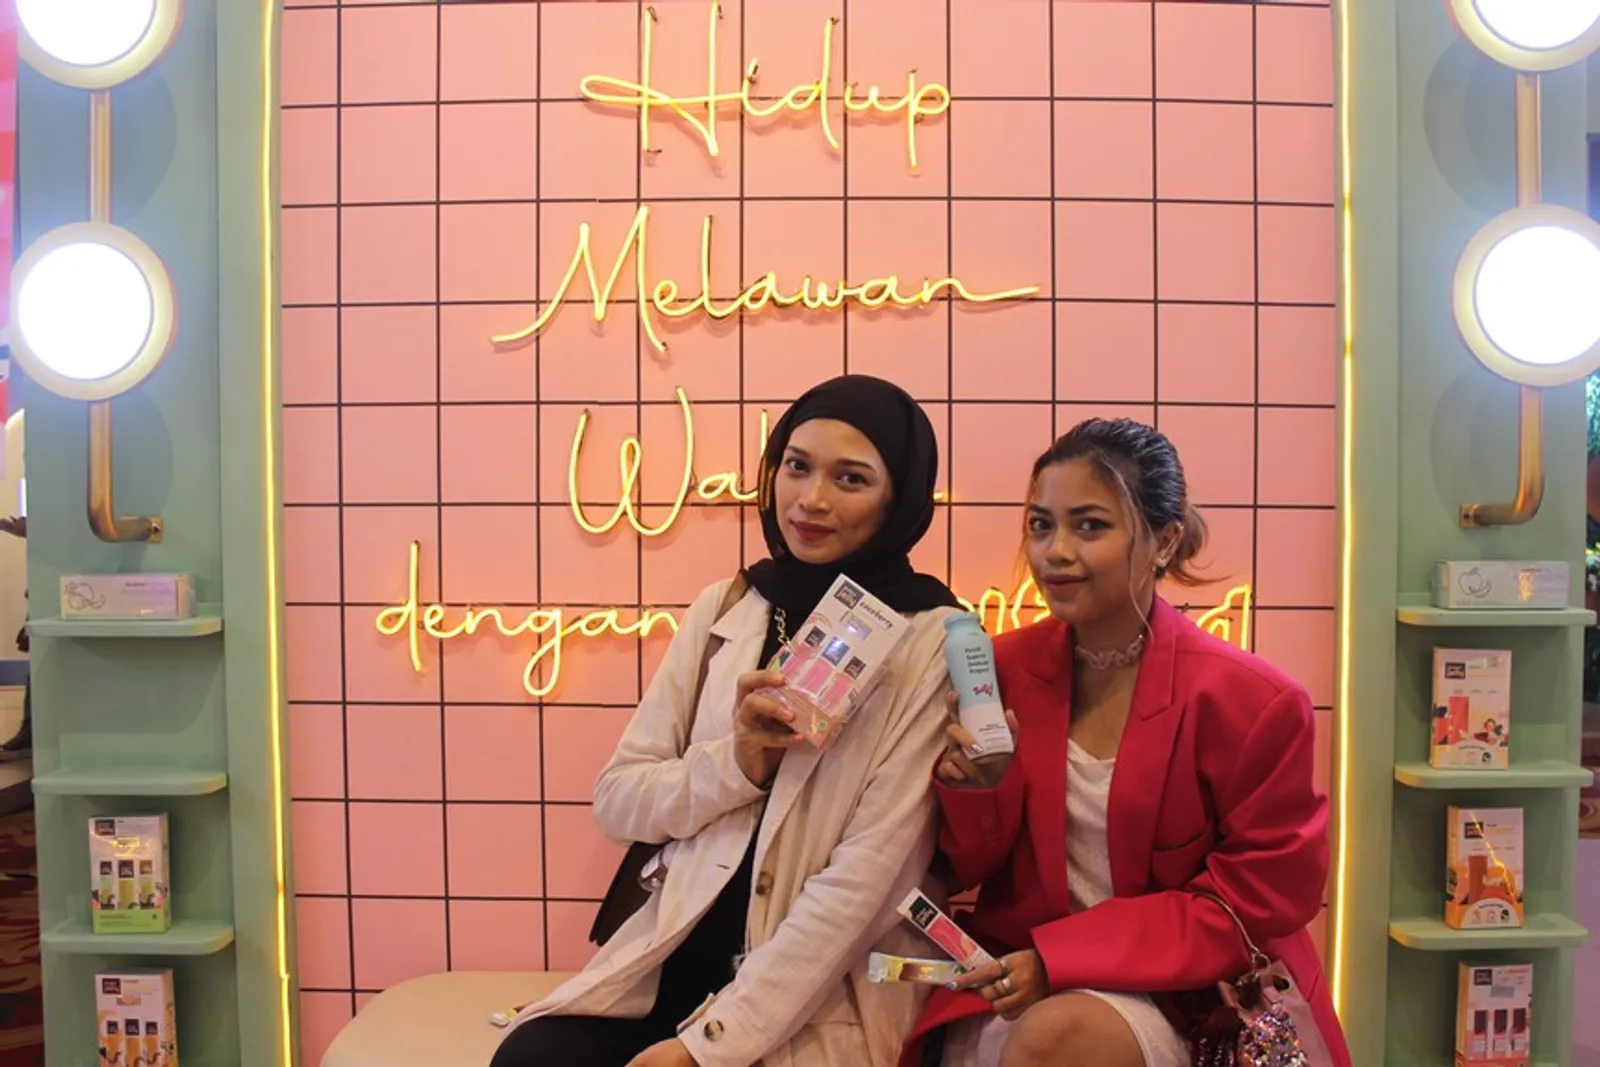 3 Alasan Booth Realfood Ramai Diserbu Pengunjung BeautyFest Asia 2023